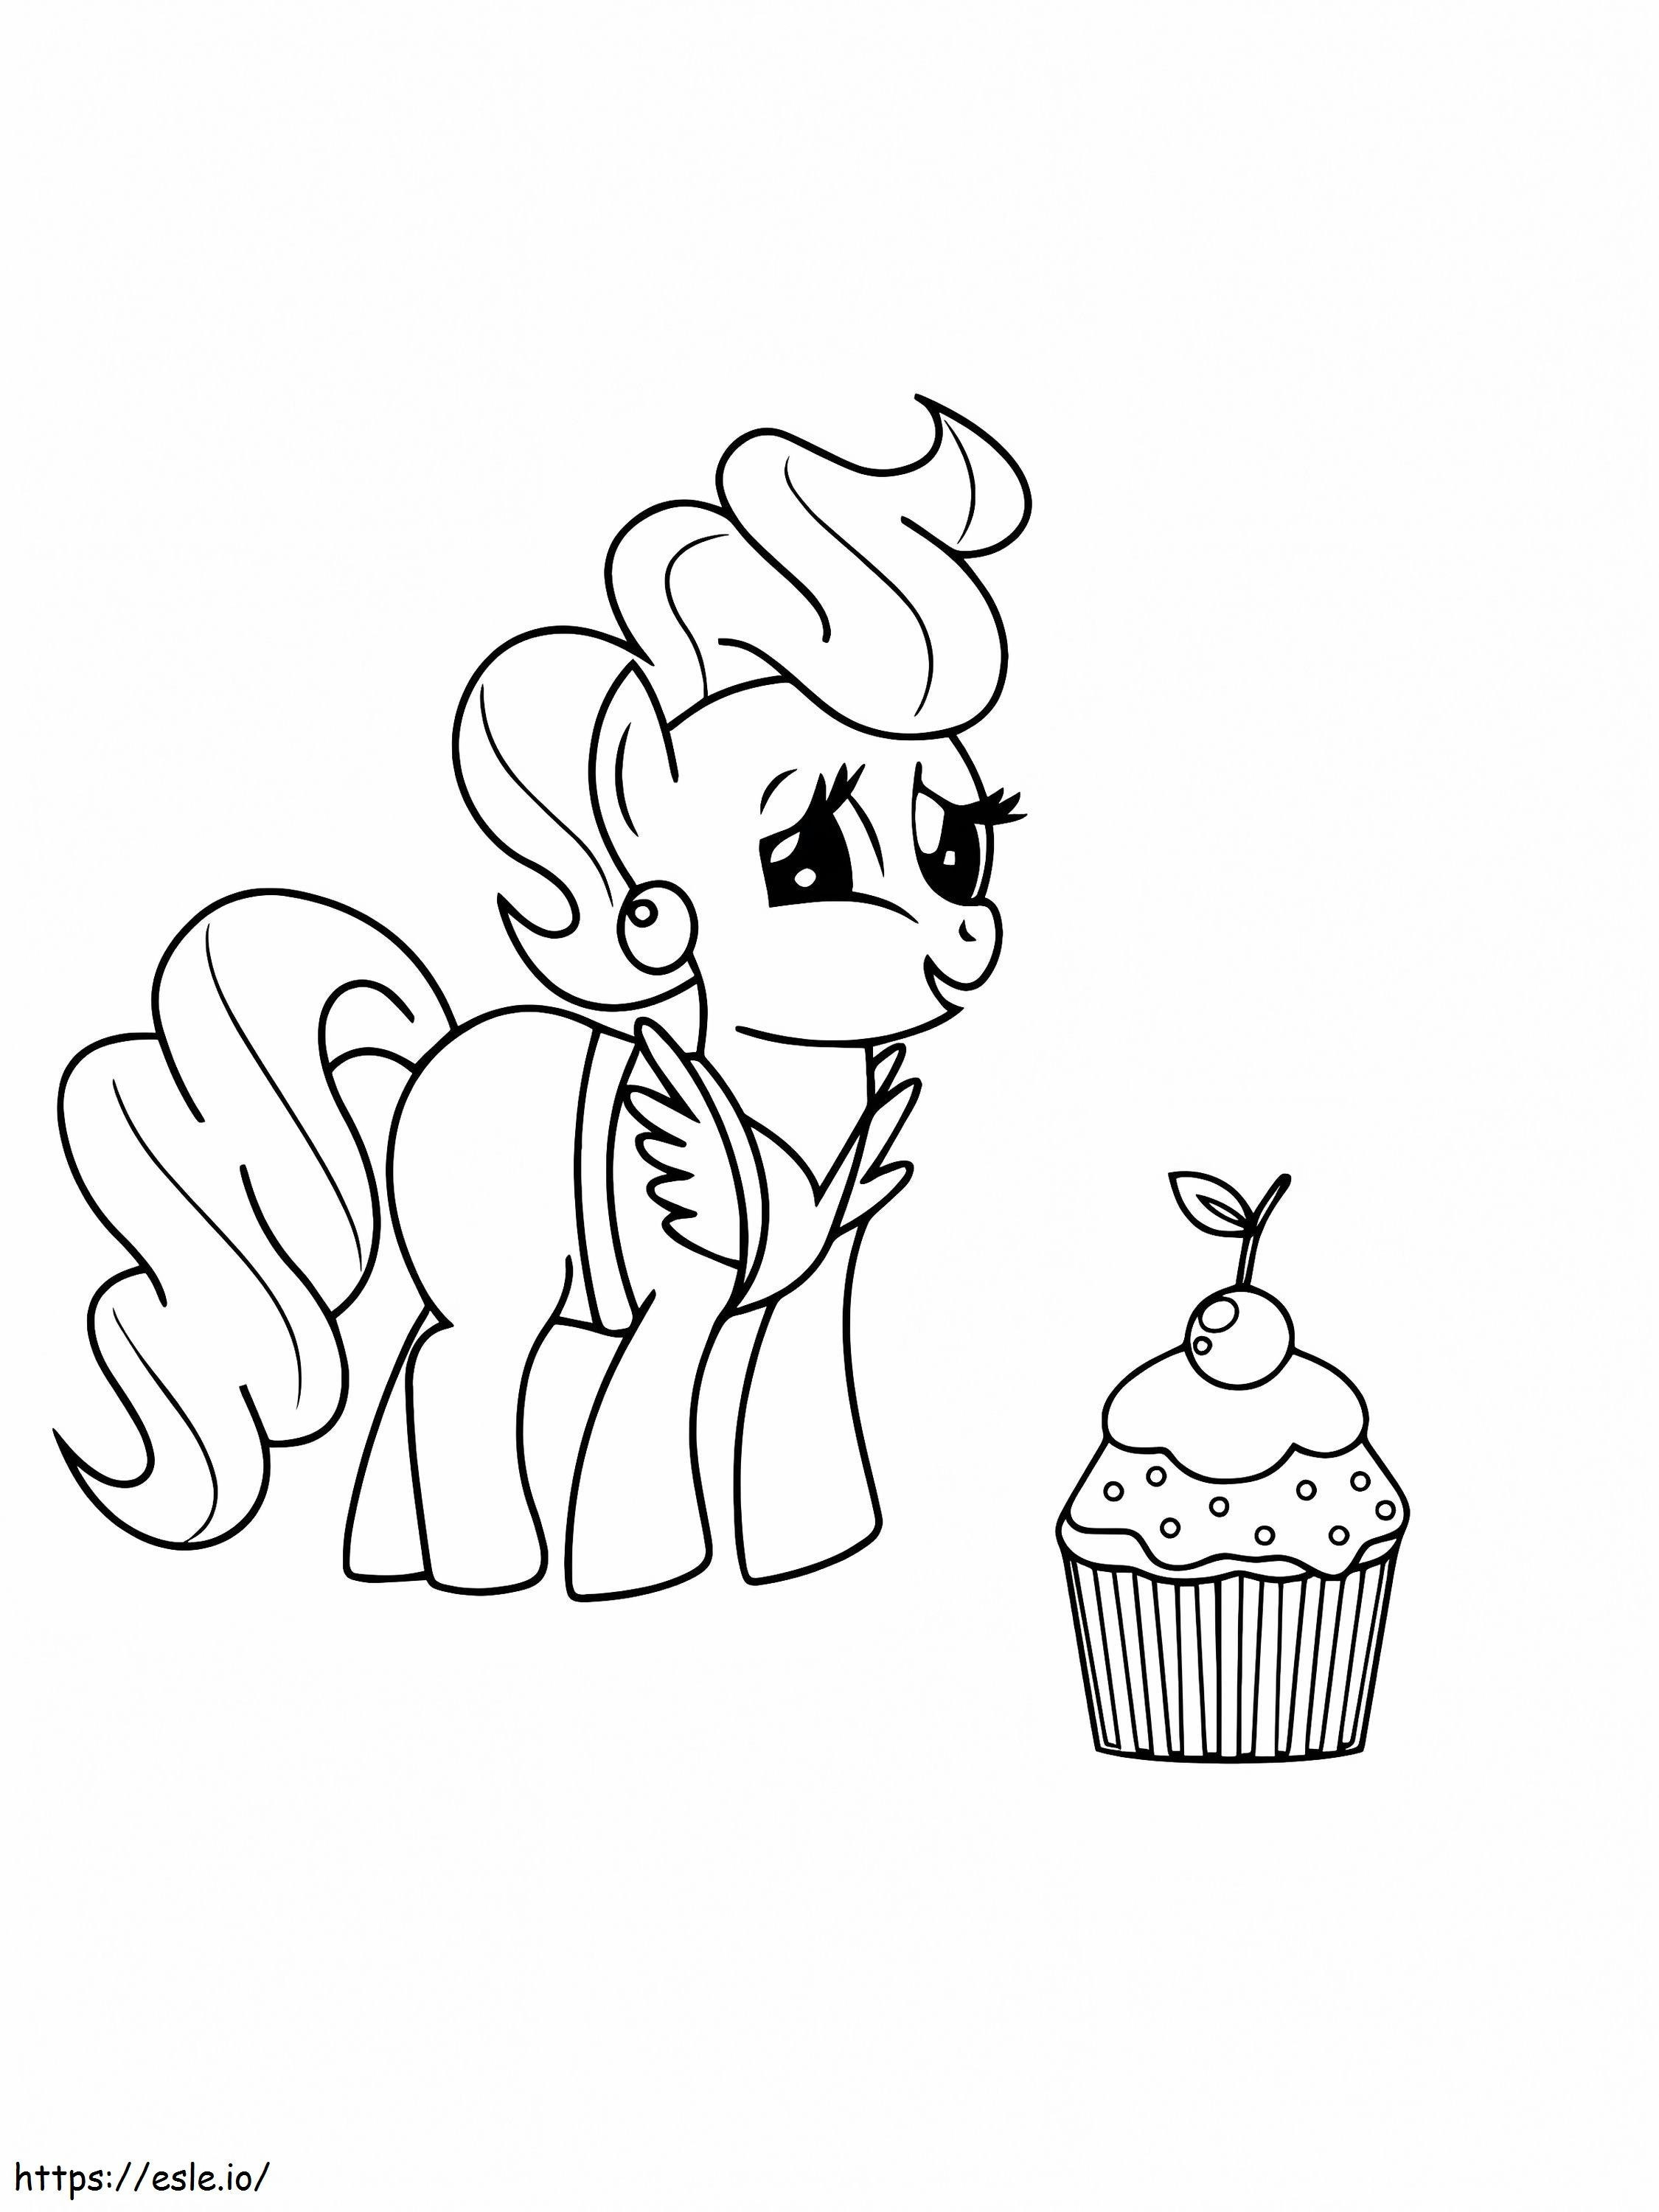 Delicioso cupcake y señora cake de My Little Pony para colorear